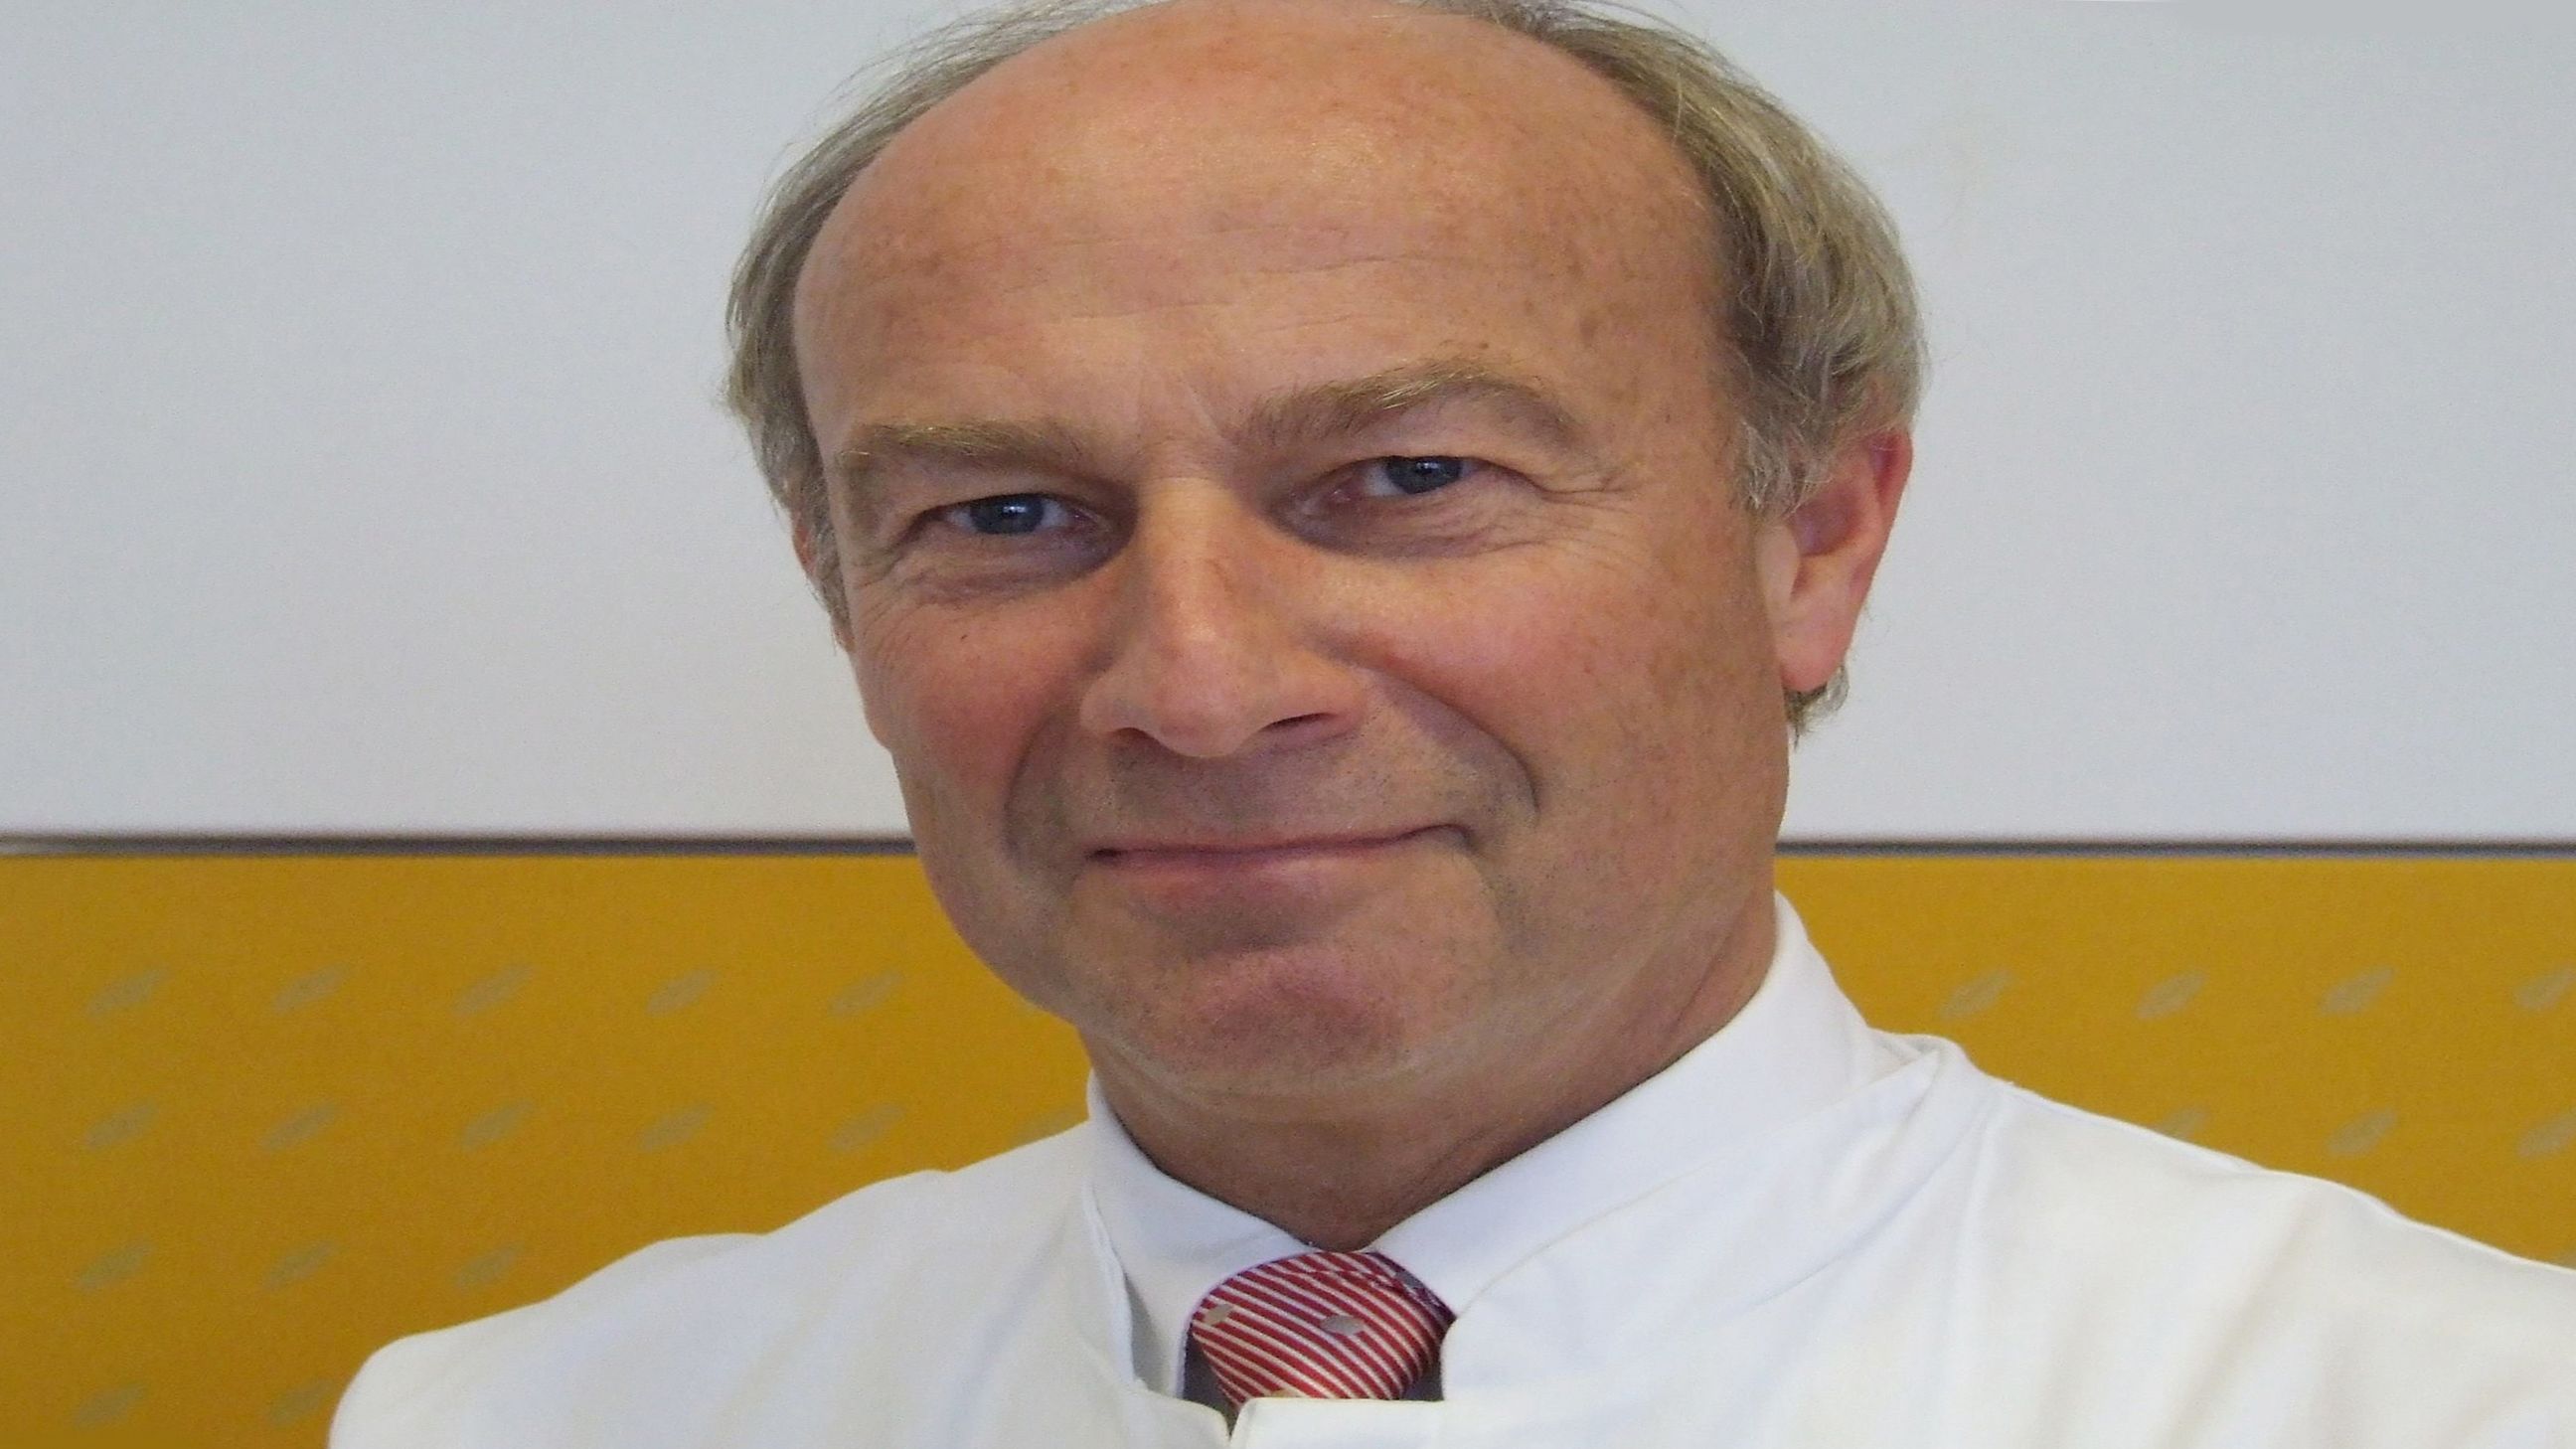 Universitätsklinikum Würzburg: Prof. Dr. Norbert Roewer